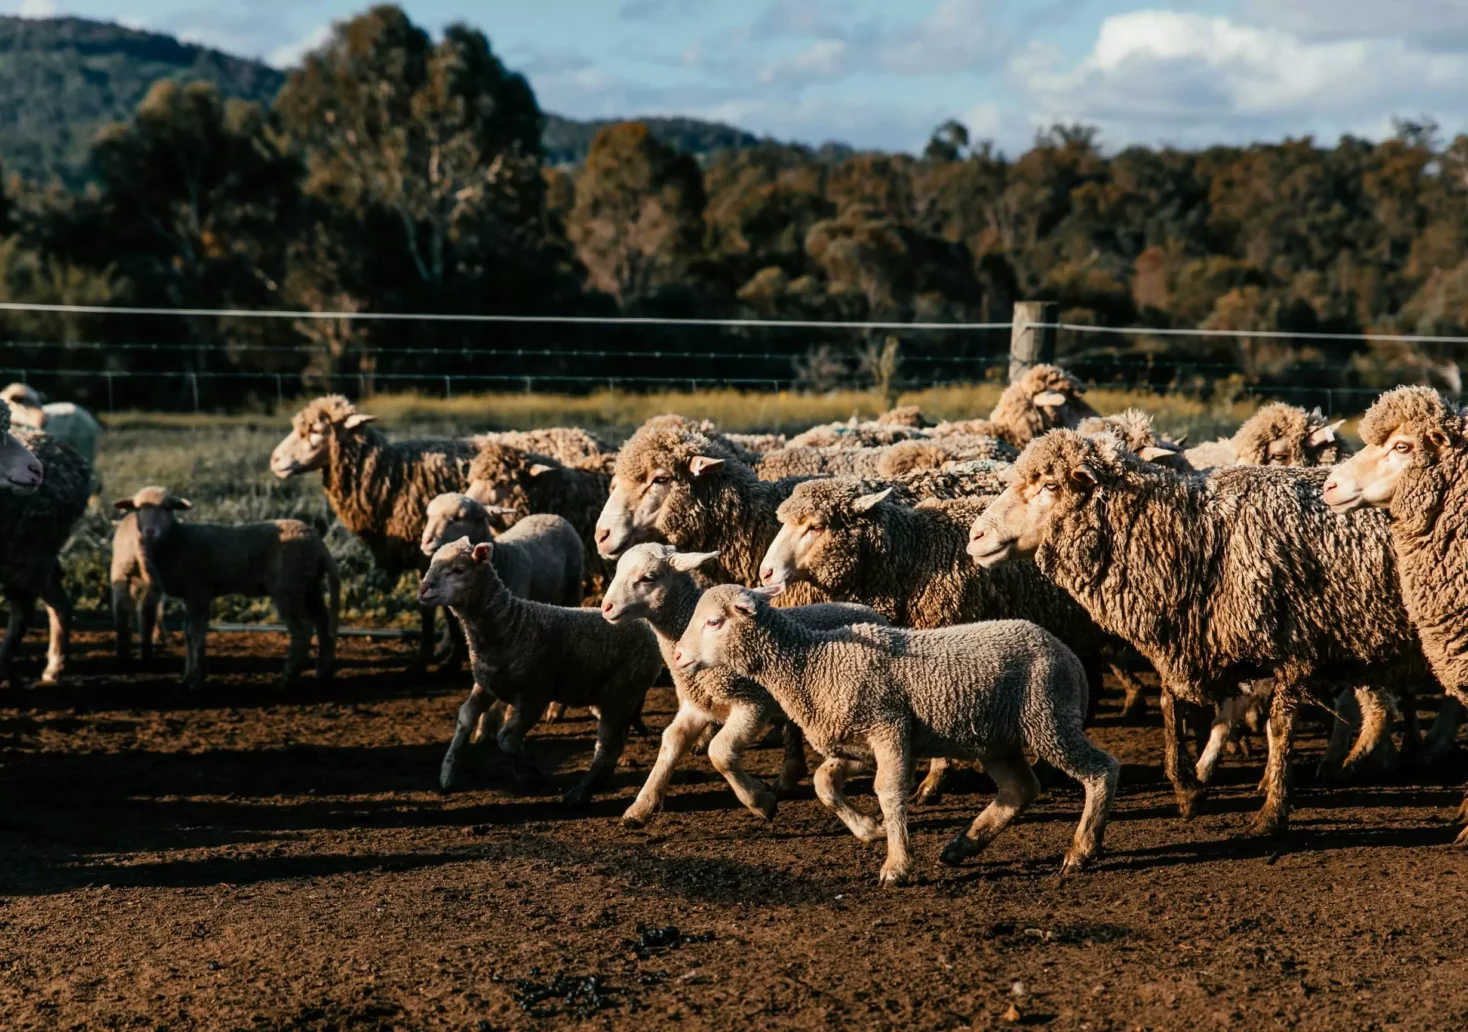 Landwirtin (64) will Schafe füttern, dann wird sie von Widder gestoßen